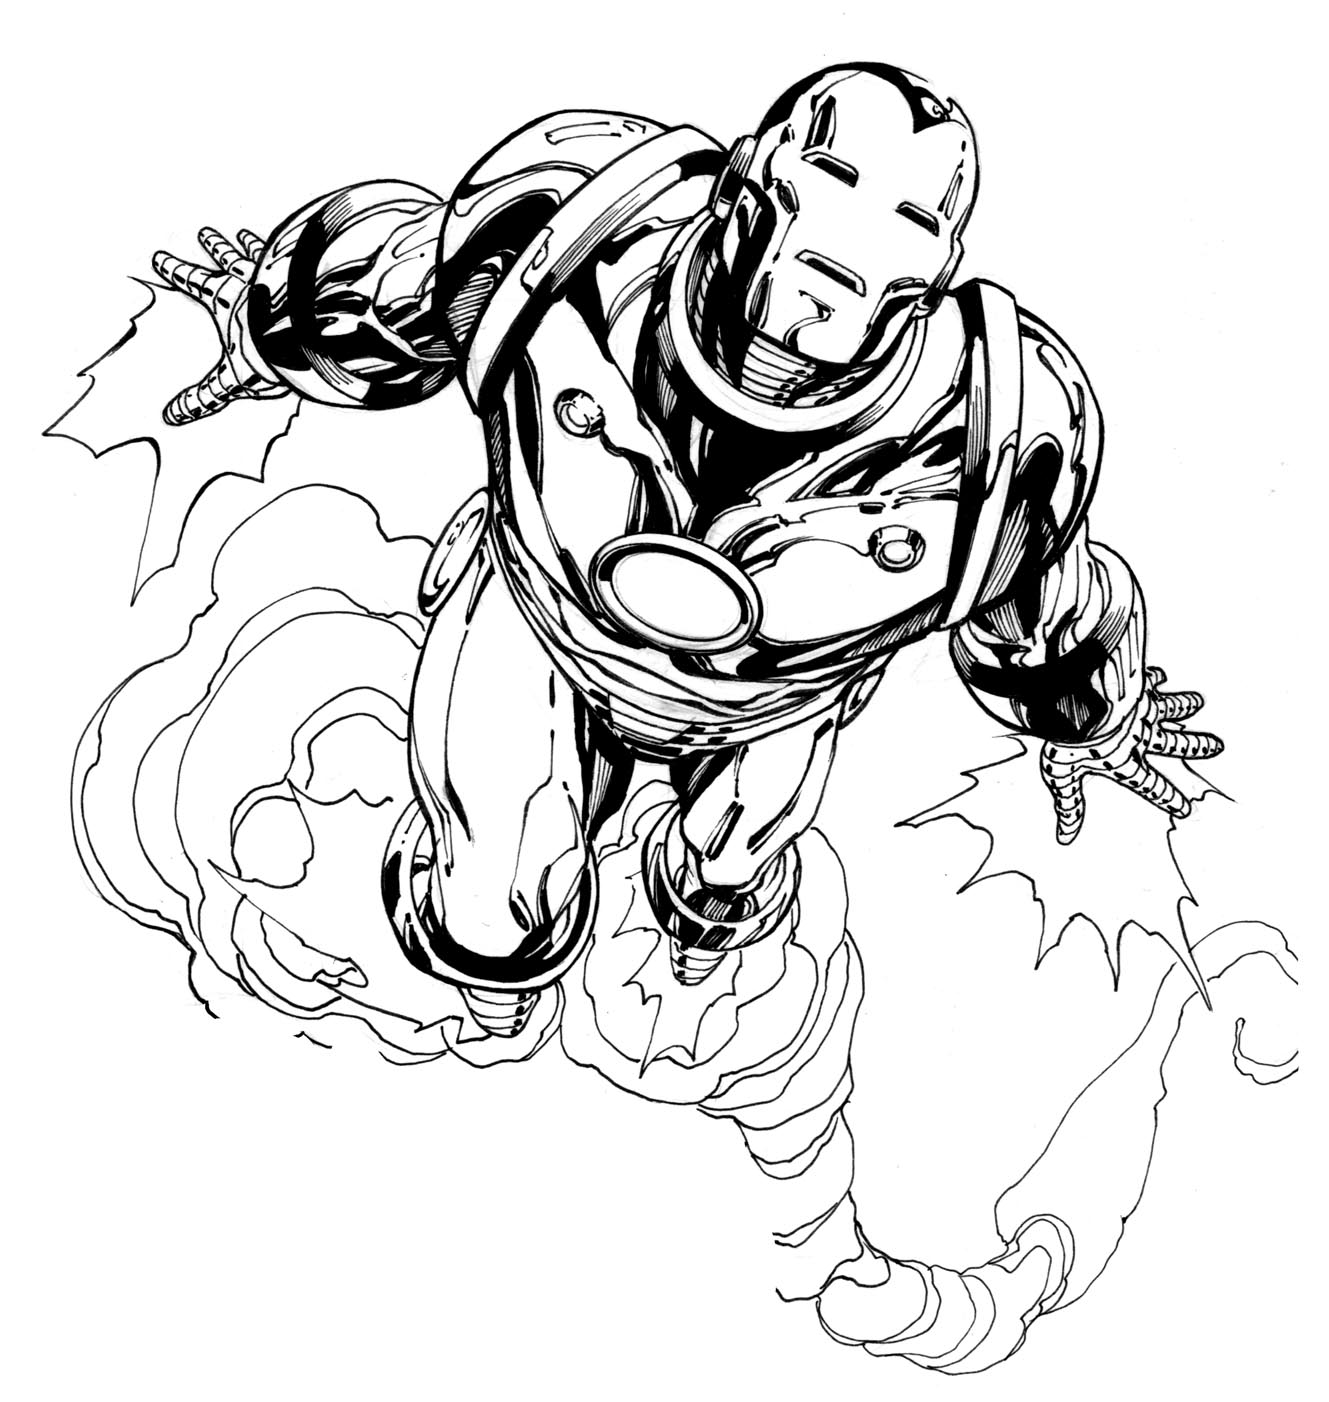 Precioso dibujo de Iron Man para imprimir y colorear